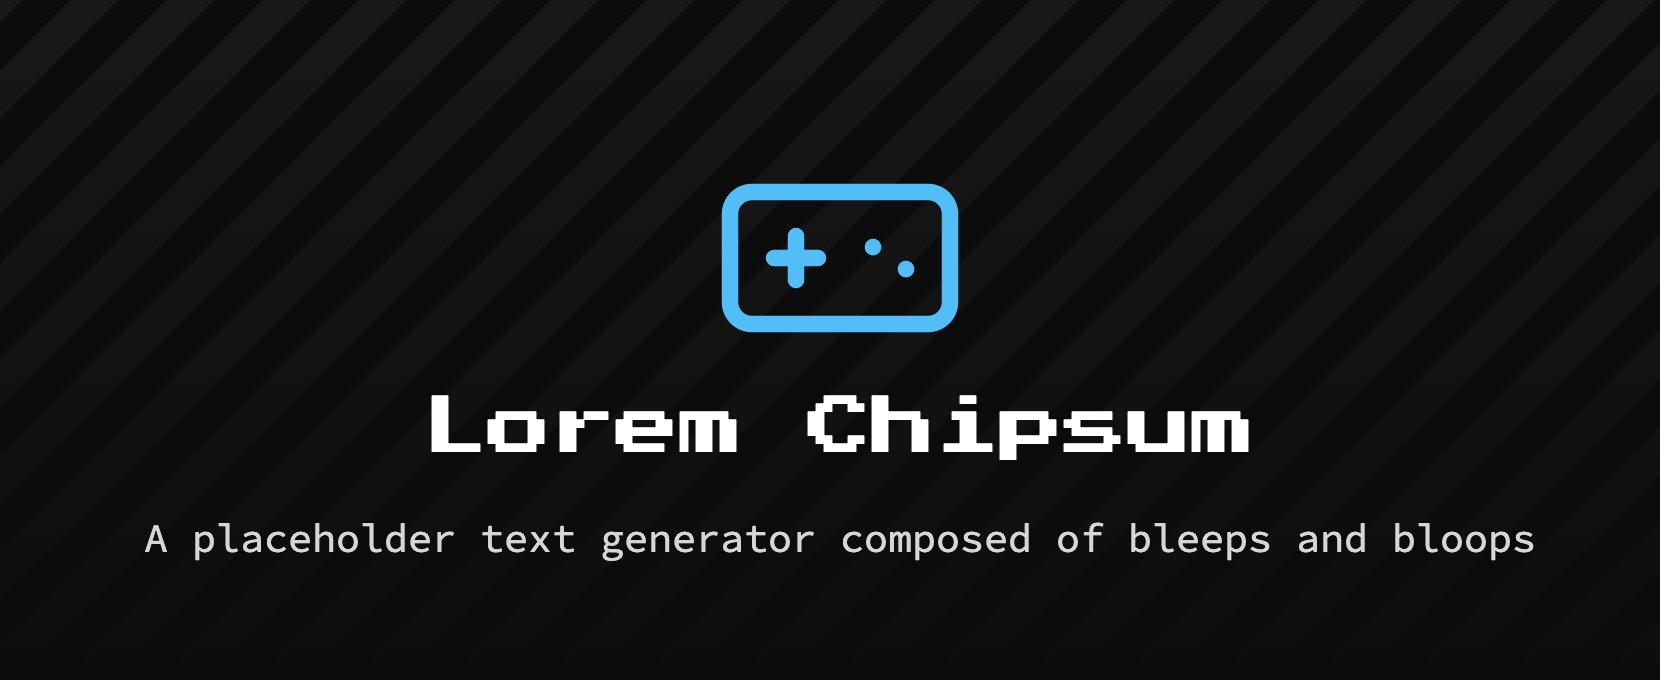 Chipsum